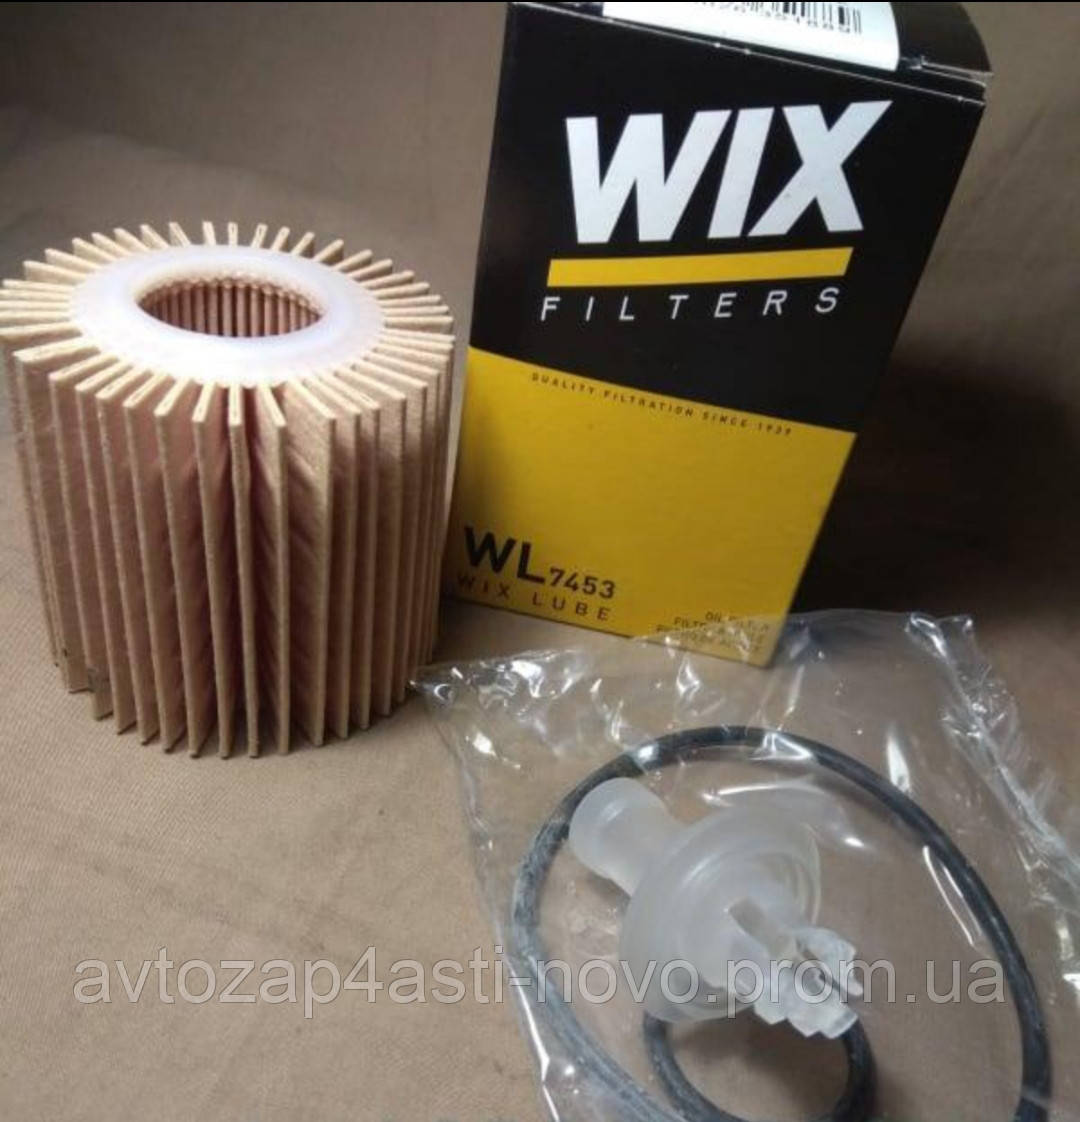 Фільтр масляний двигуна WL7453/OE685/1 WIX-Filtron